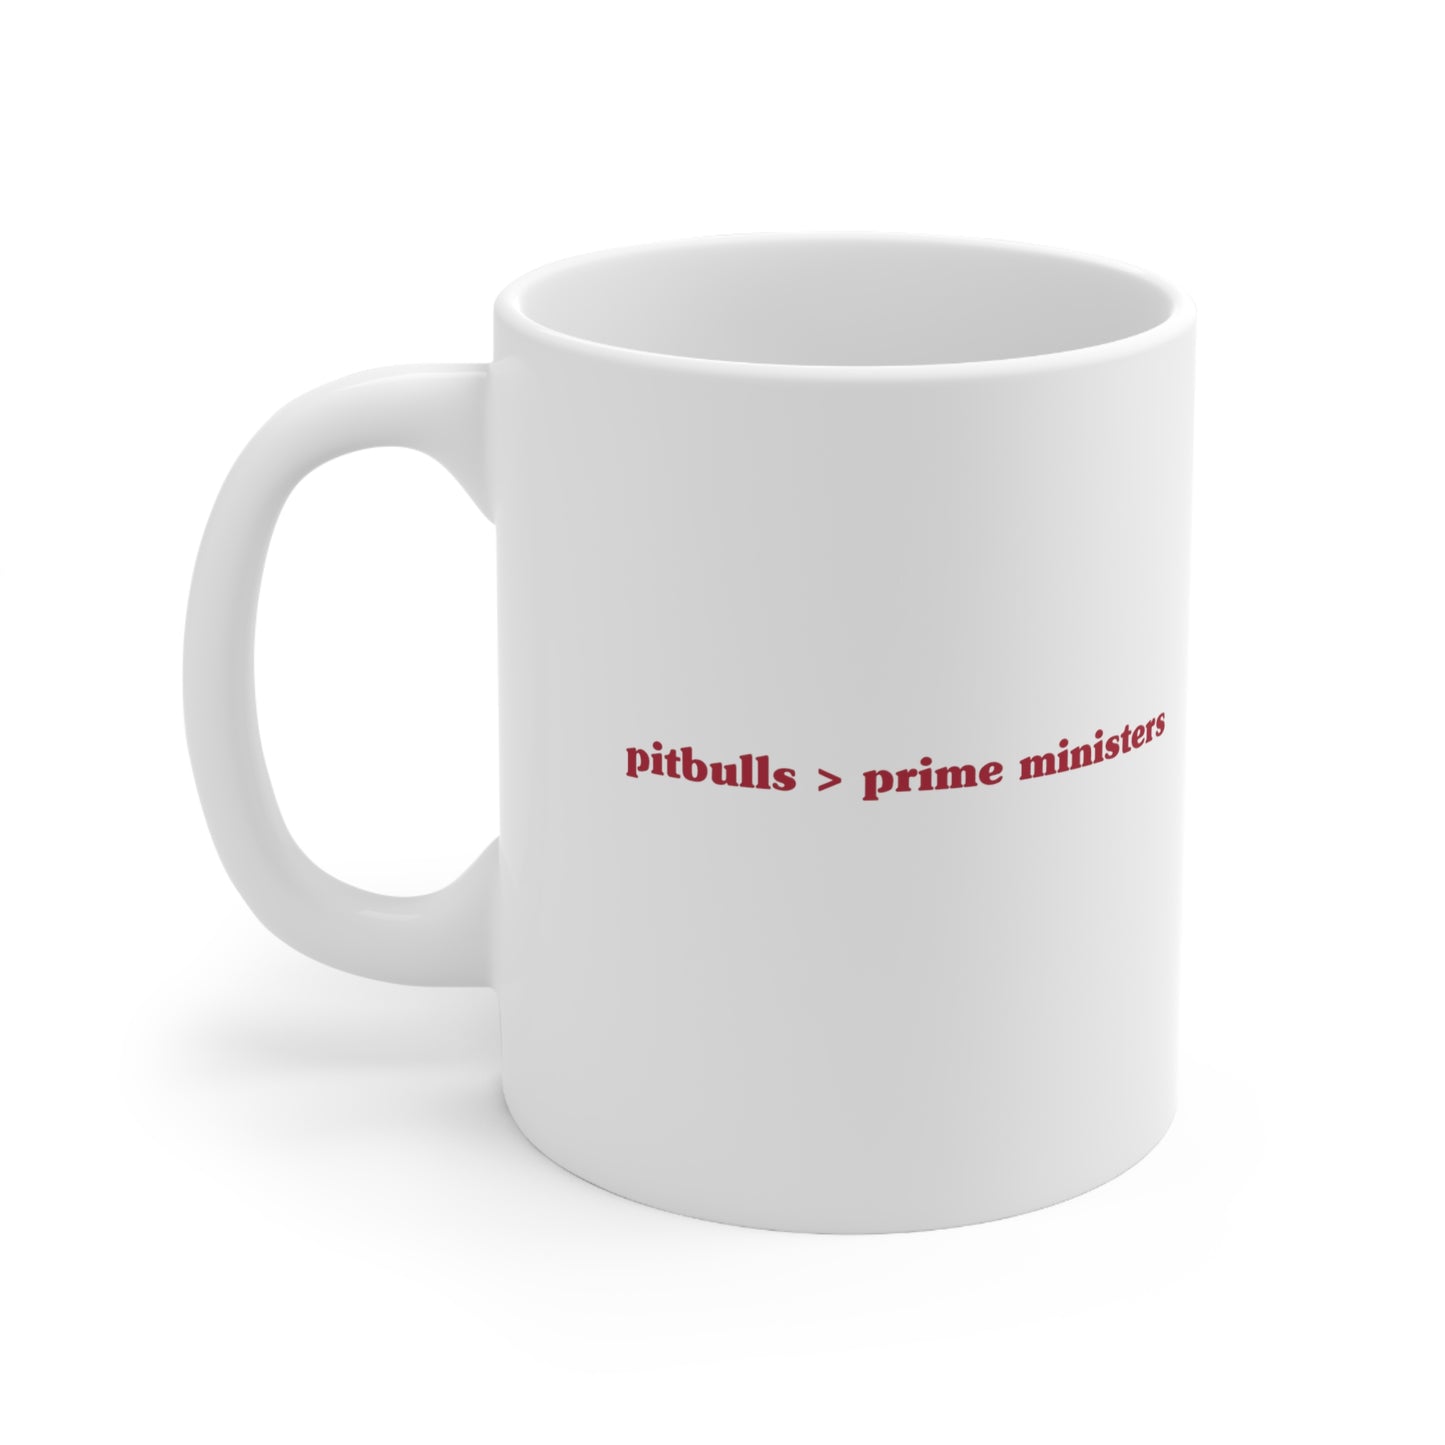 Pitbulls > prime ministers Mug